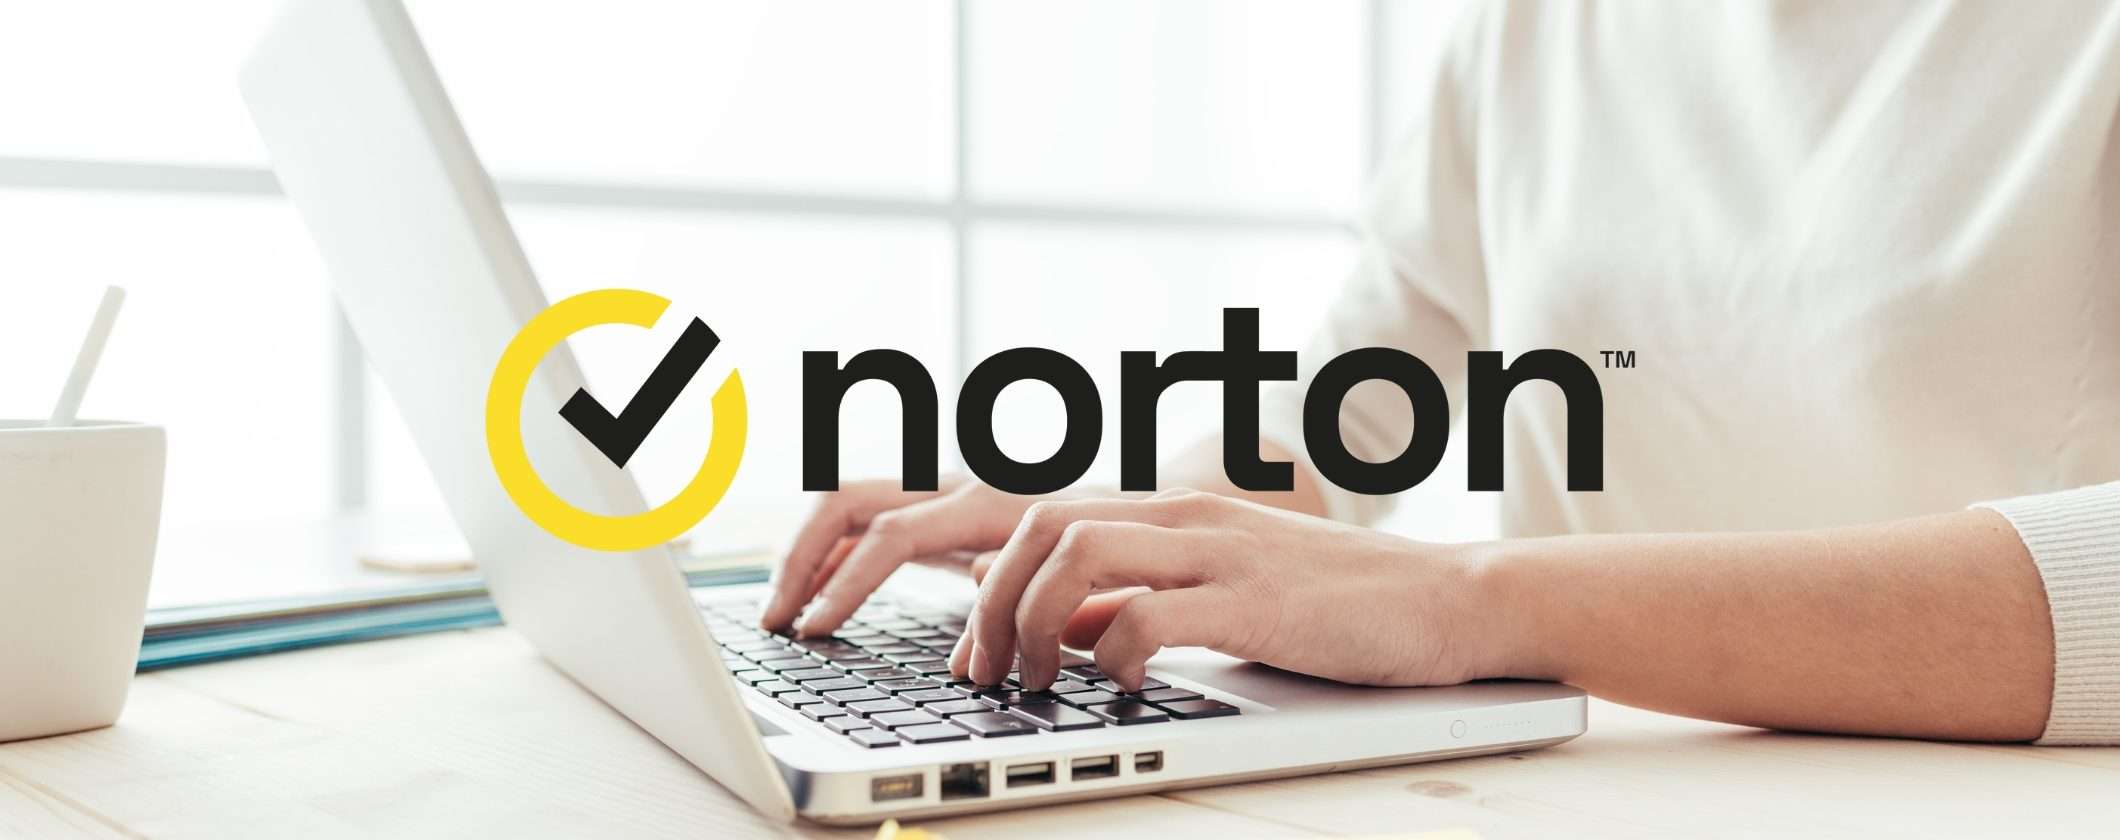 Stop a ransomware e hacking: Norton 360 Standard con il 60% di sconto